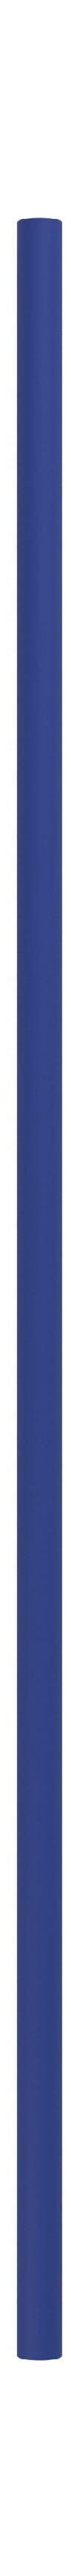 Système de étagères Moebe / étagère murale 85 cm, bleu profond